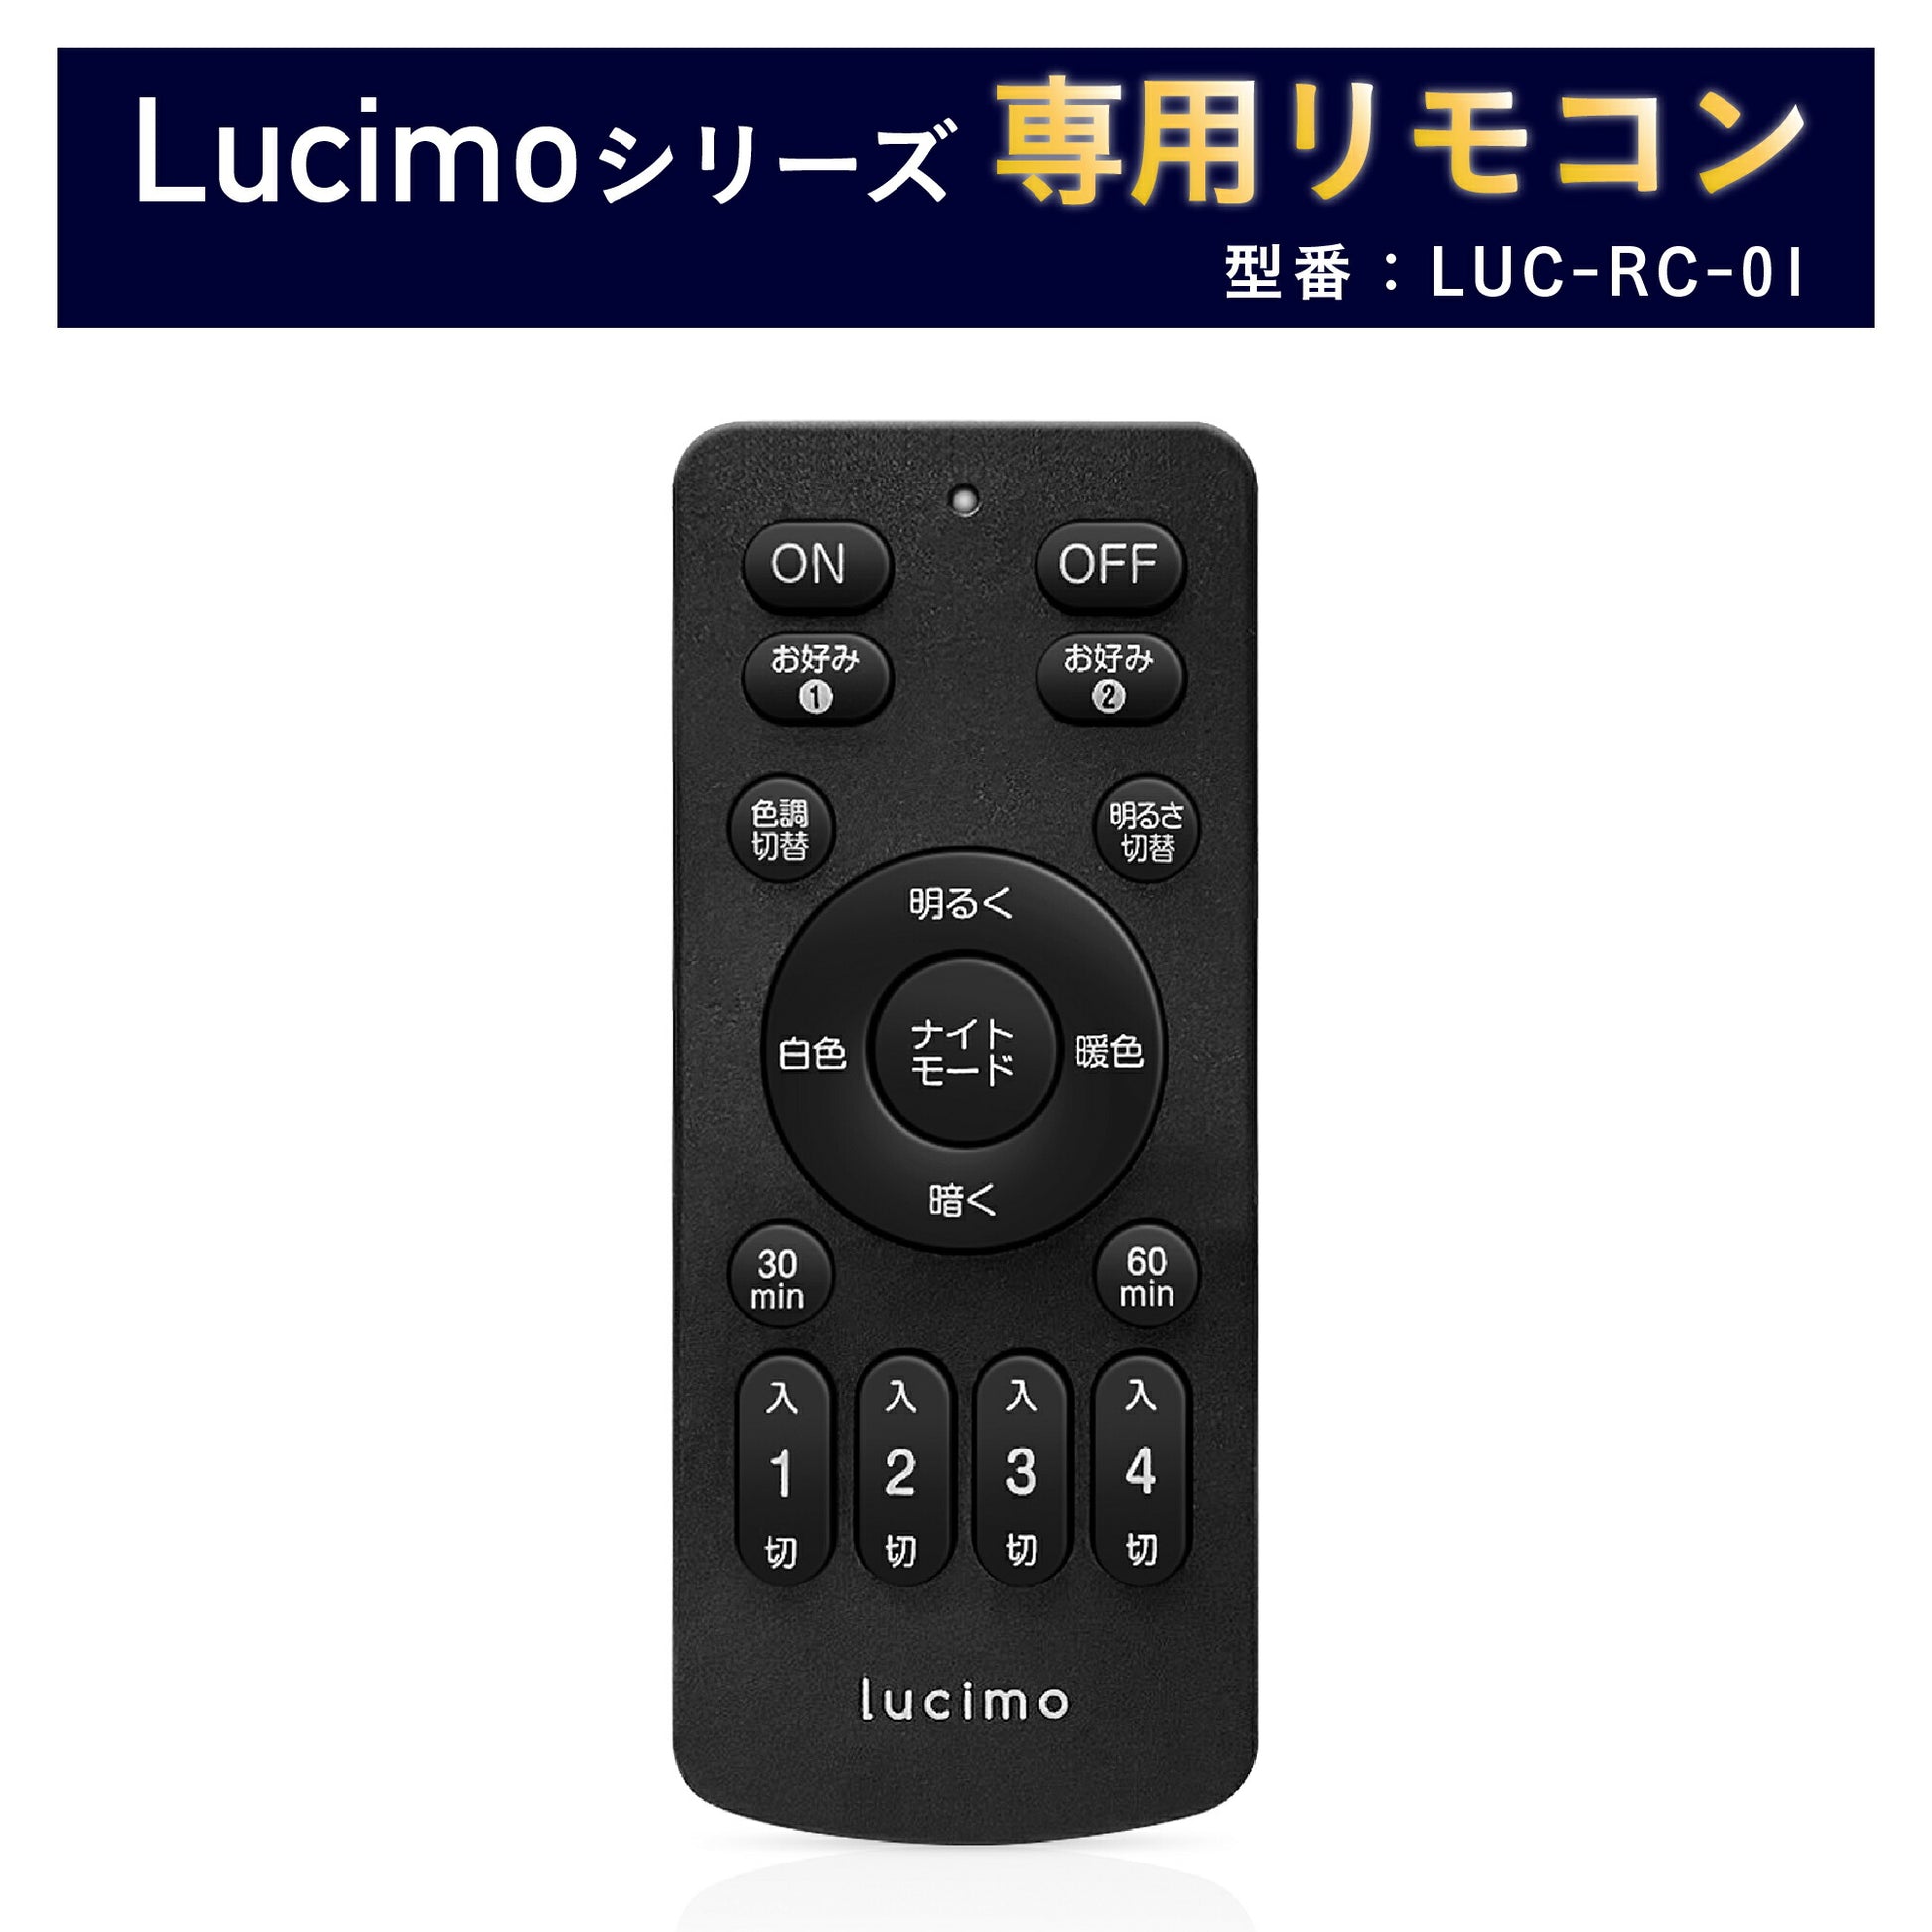 リモコン Lucimo ルシモ 照明 用 型番 LUC-RC-01 リモコン単品